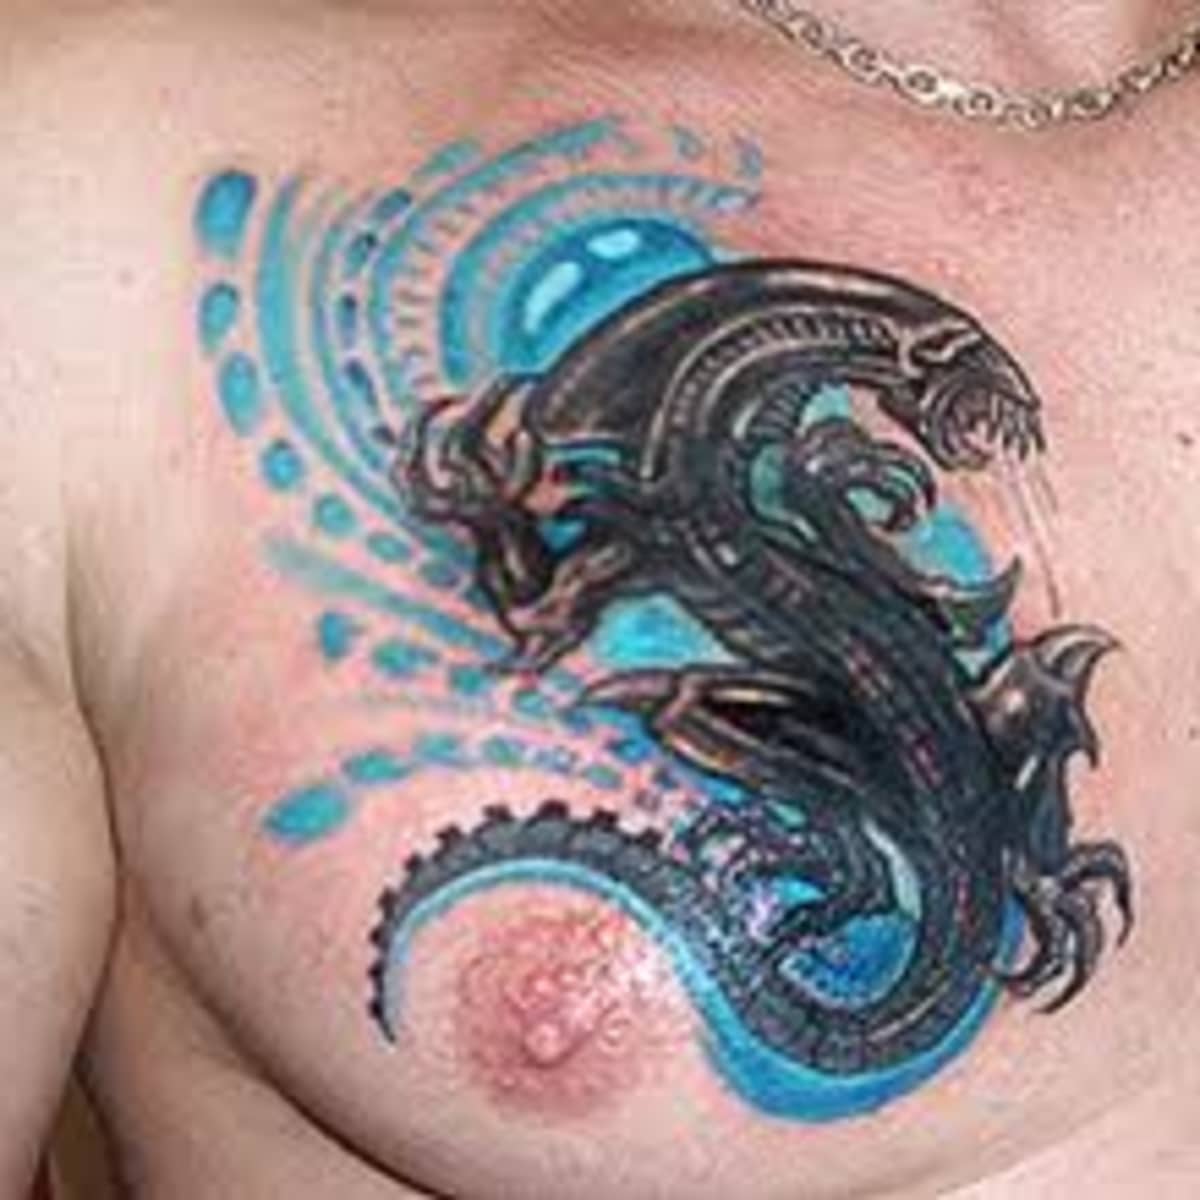 Alien Small Hand Tattoo | Alien tattoo, Small hand tattoos, Pattern tattoo